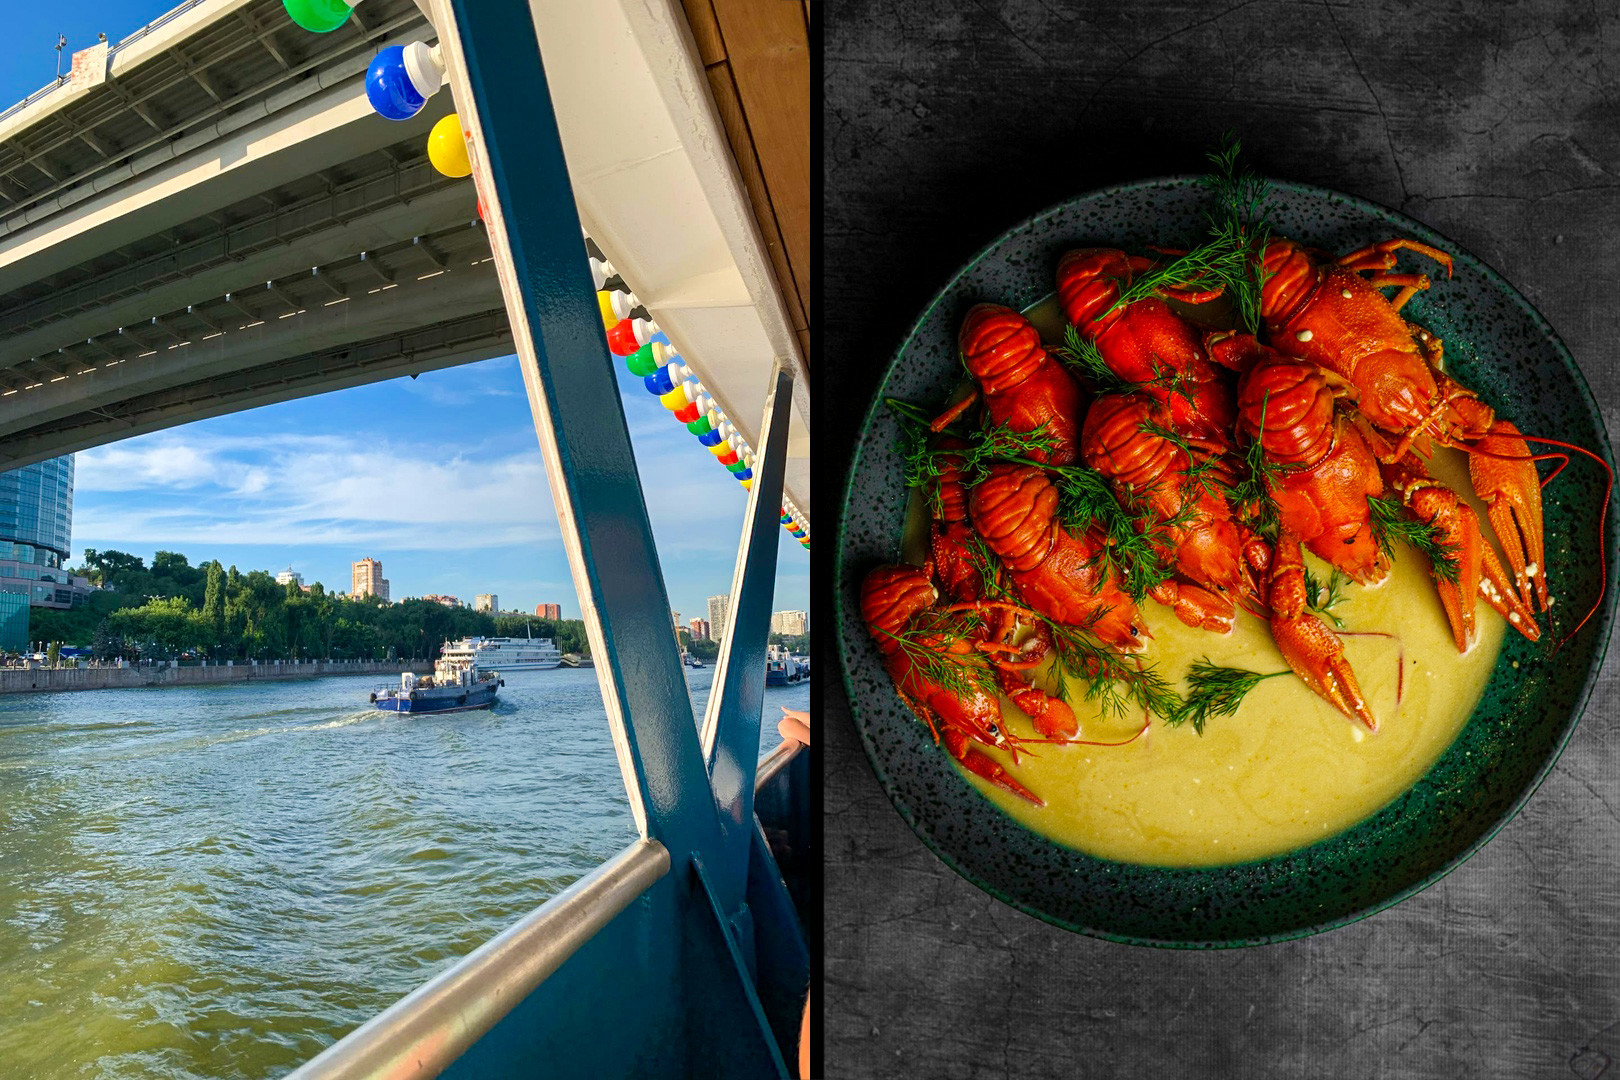 Il fiume Don e alcune specialità culinarie locali: i gamberi di fiume